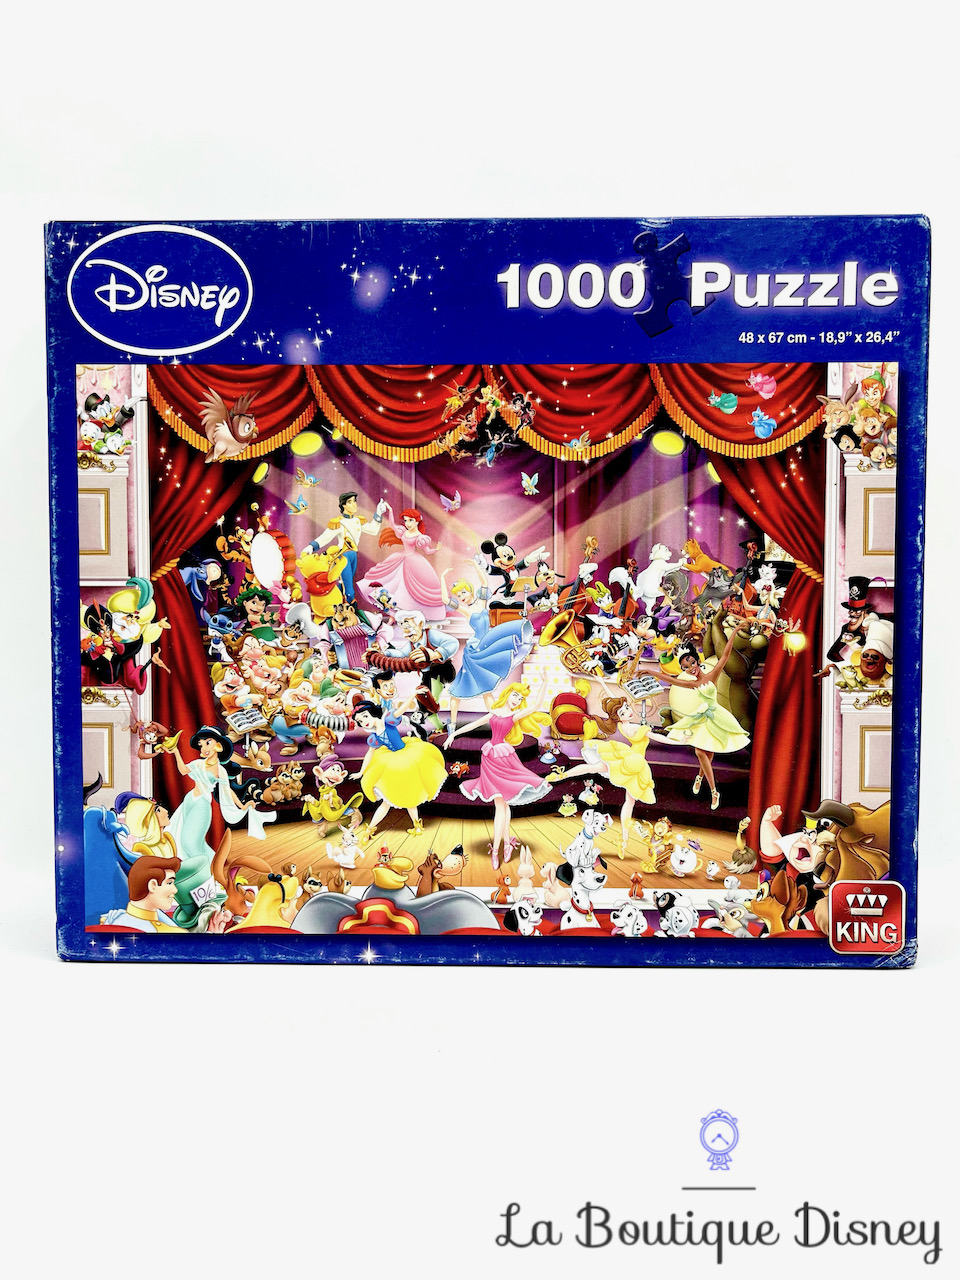 Puzzle Adulte - Disney - Le magasin de jouets 1000 pièces